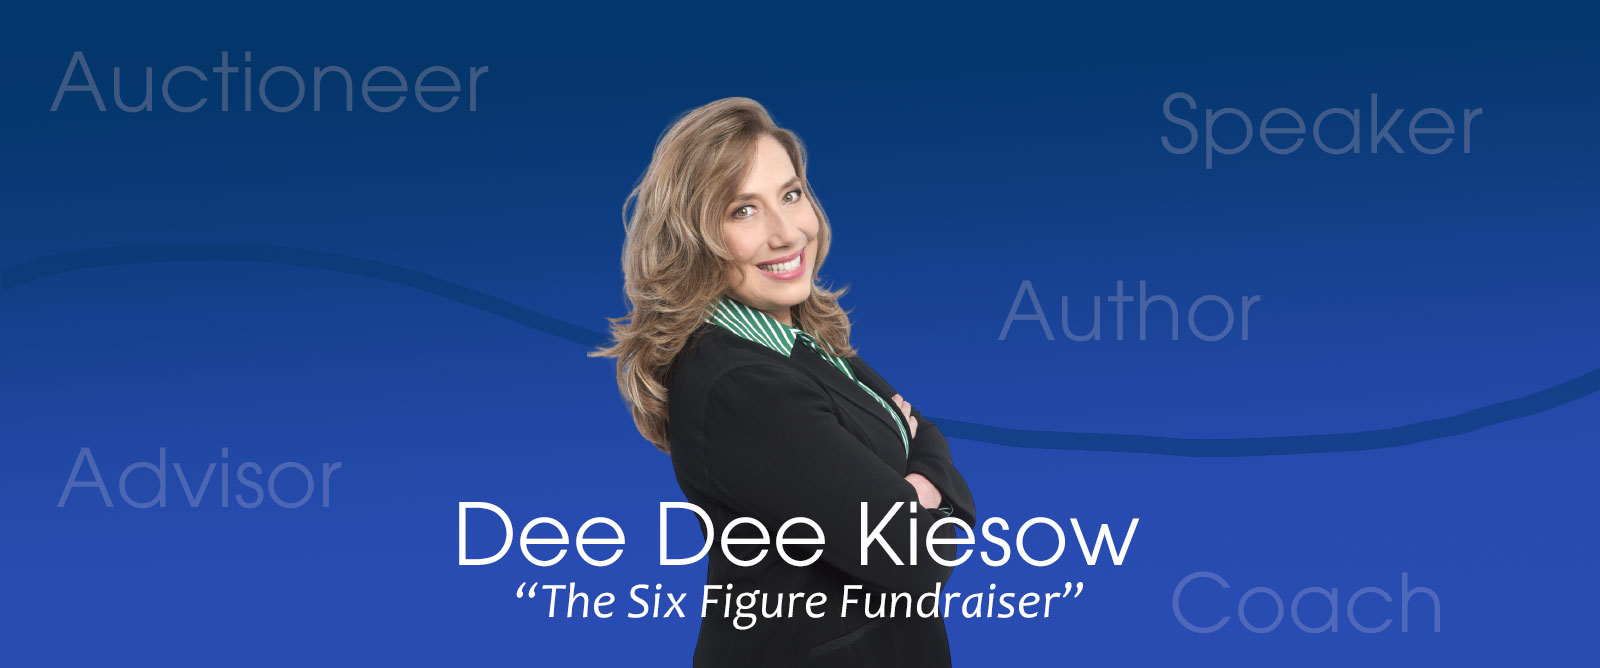 DeeDee Kiesow -The Six Figure Fundraiser